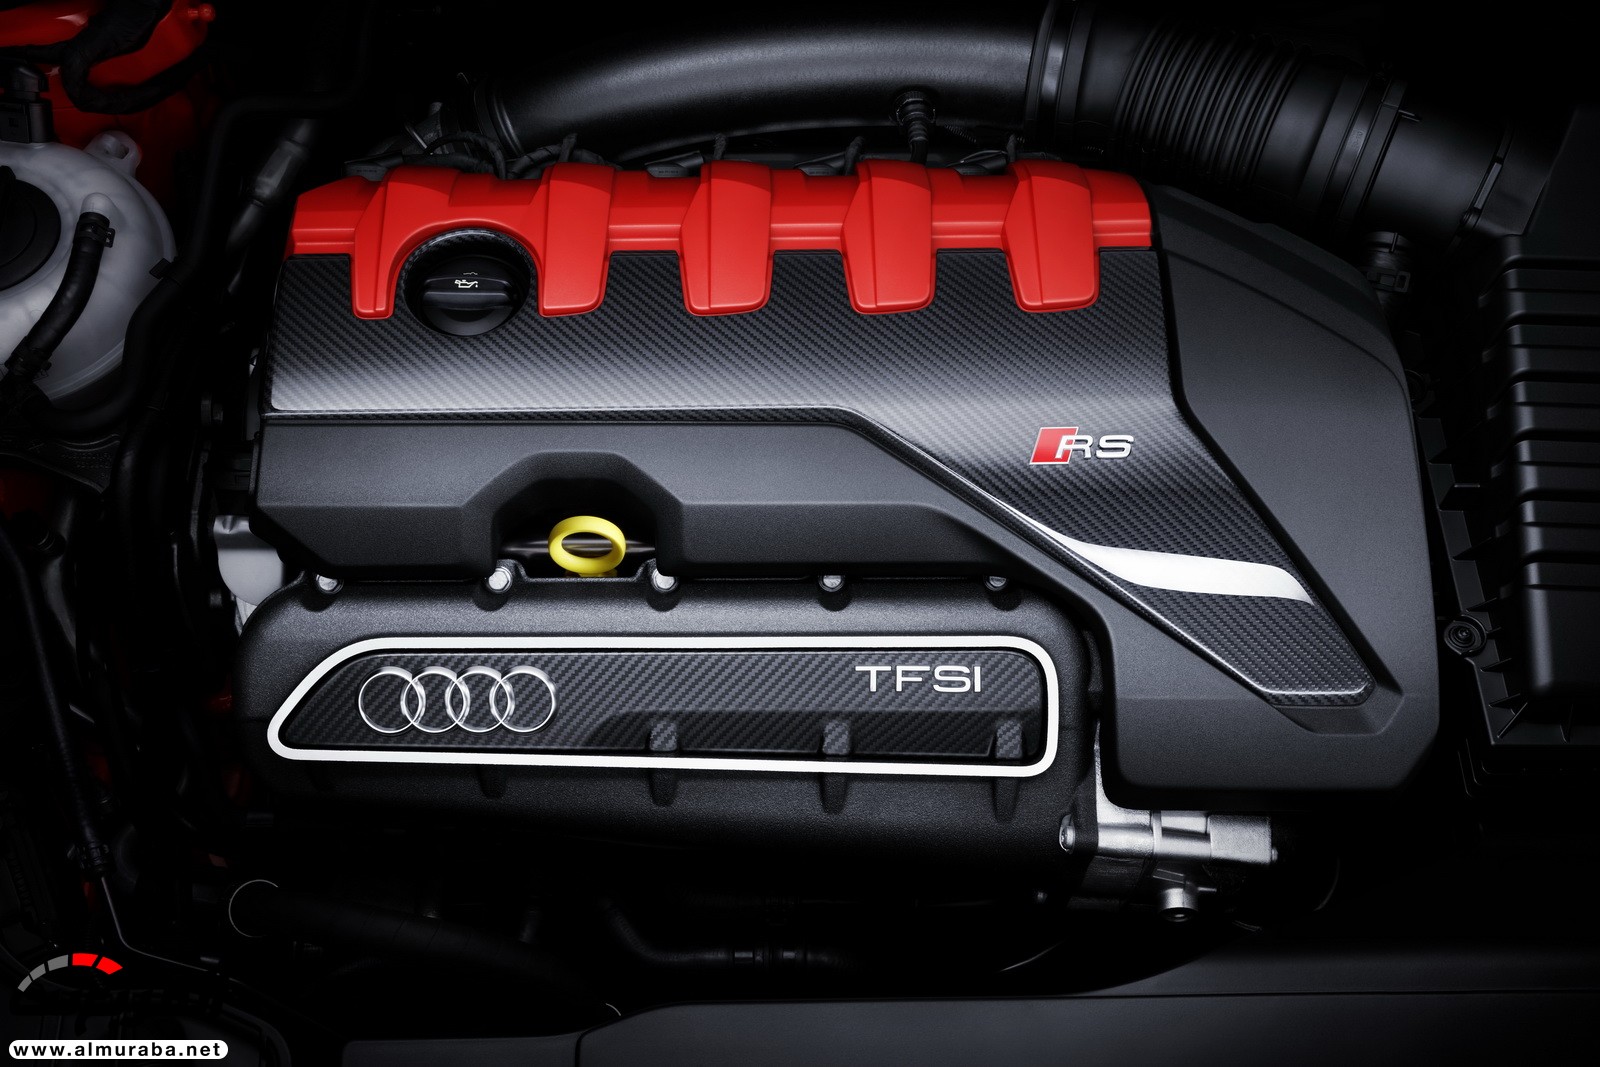 "أودي" تكشف عن RS3 الجديدة كليا 2018 بقوة 395 حصان Audi 57